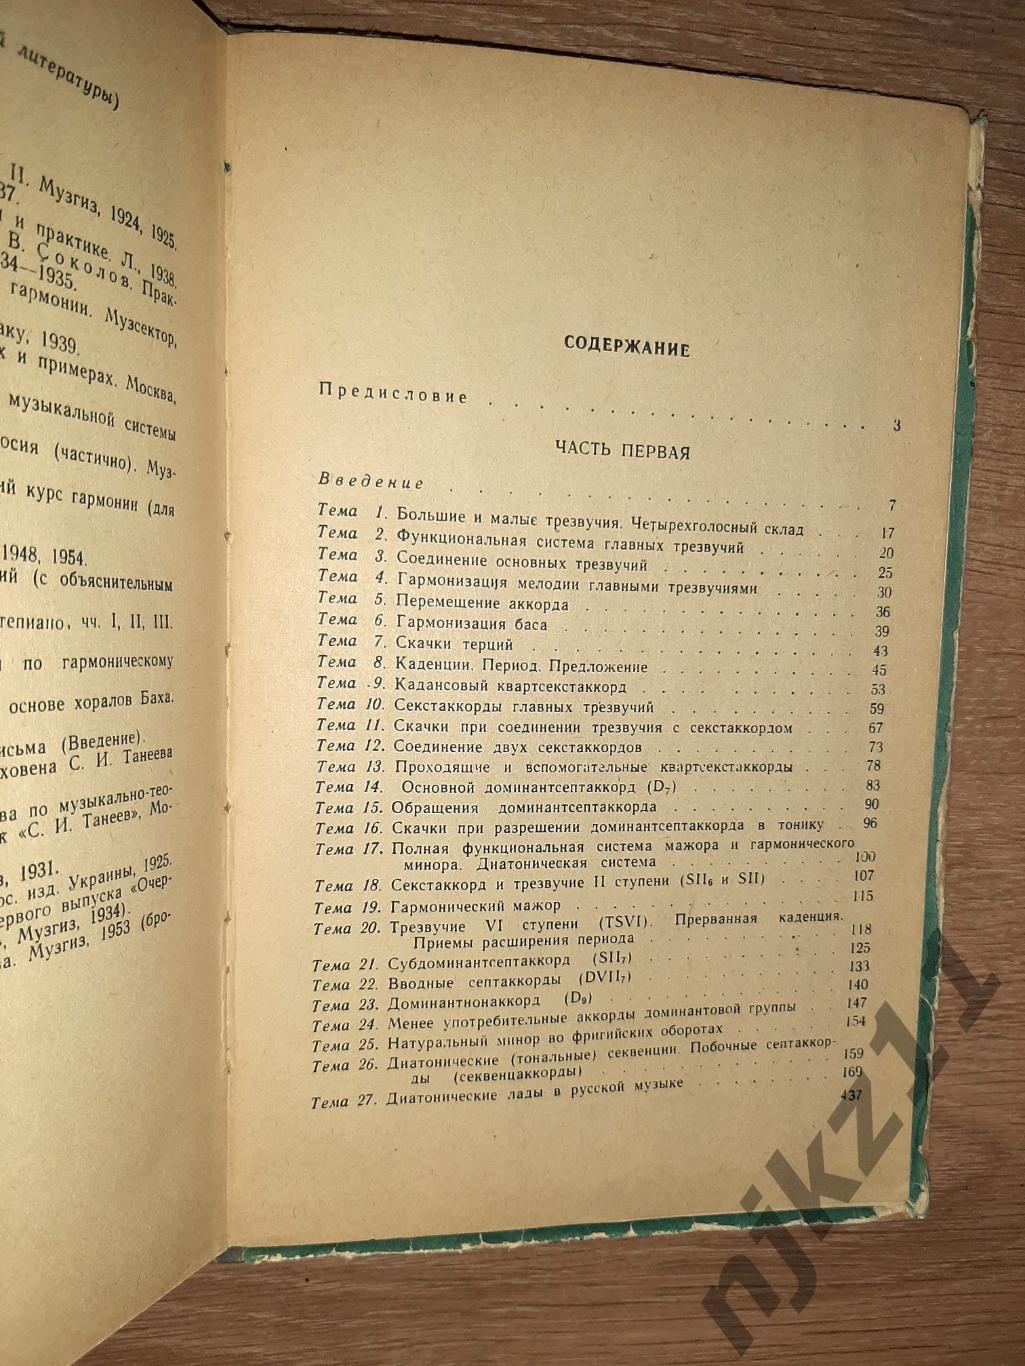 Учебник гармонии 1964г 5